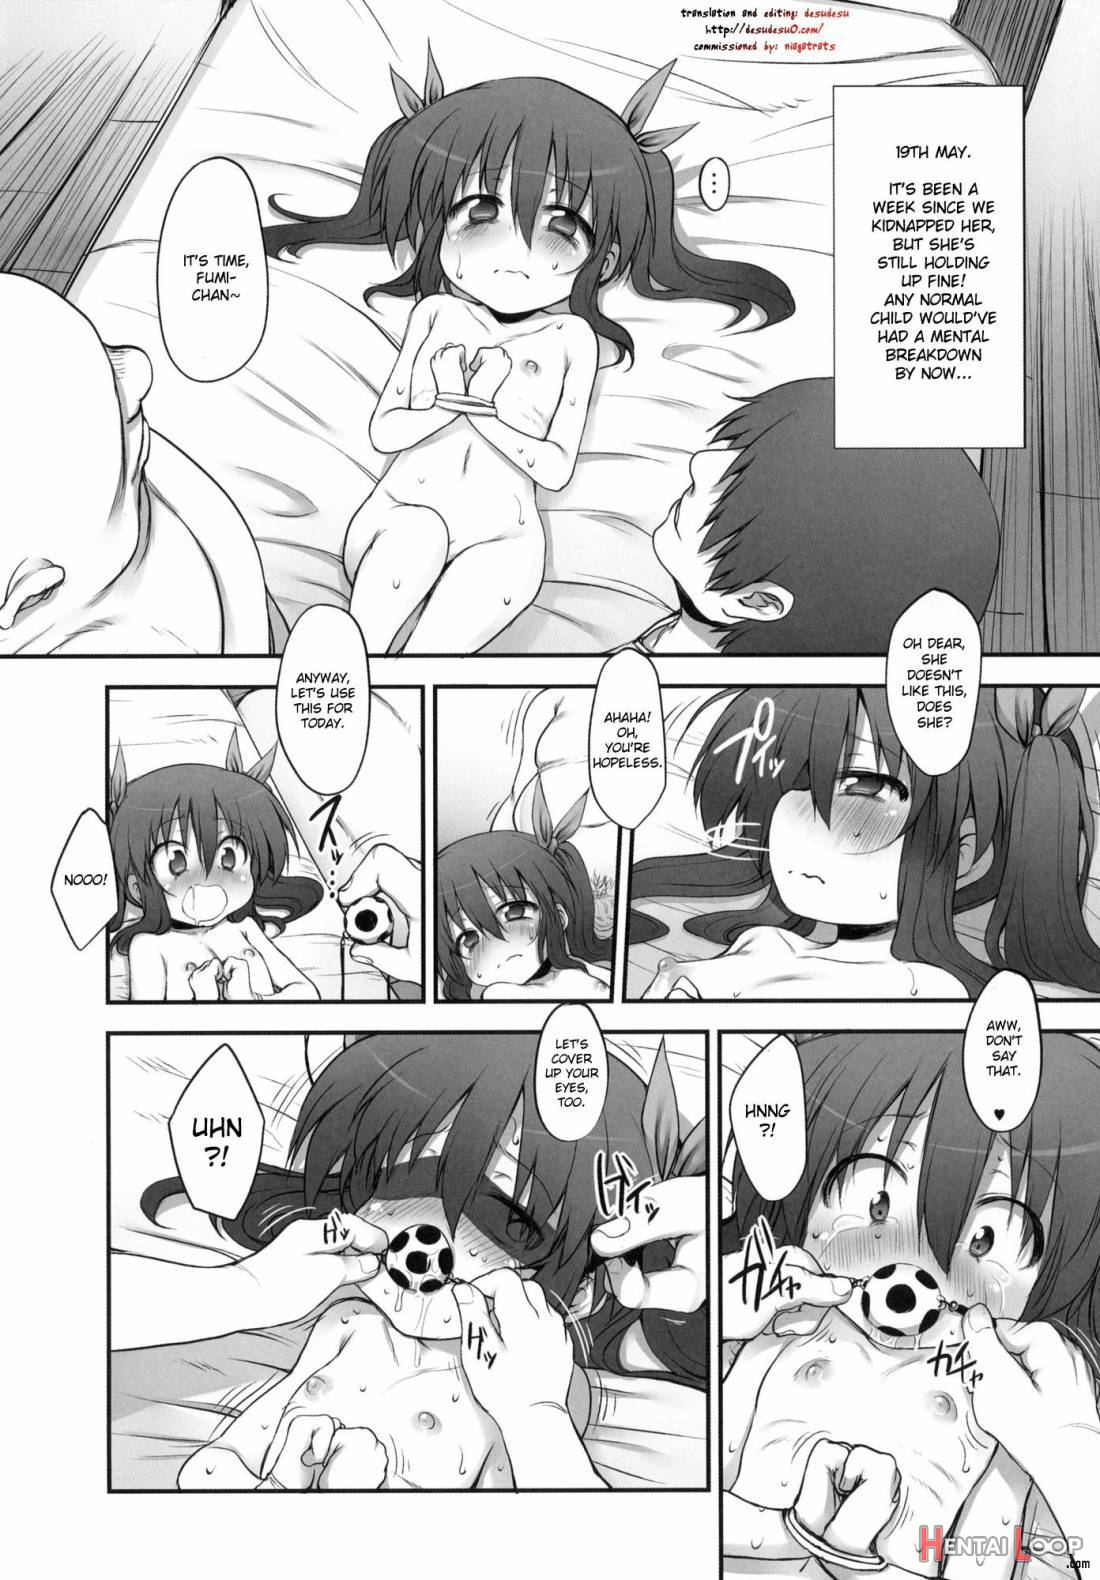 Fumi-chan no Kansatsu Nikki (Ge) page 2